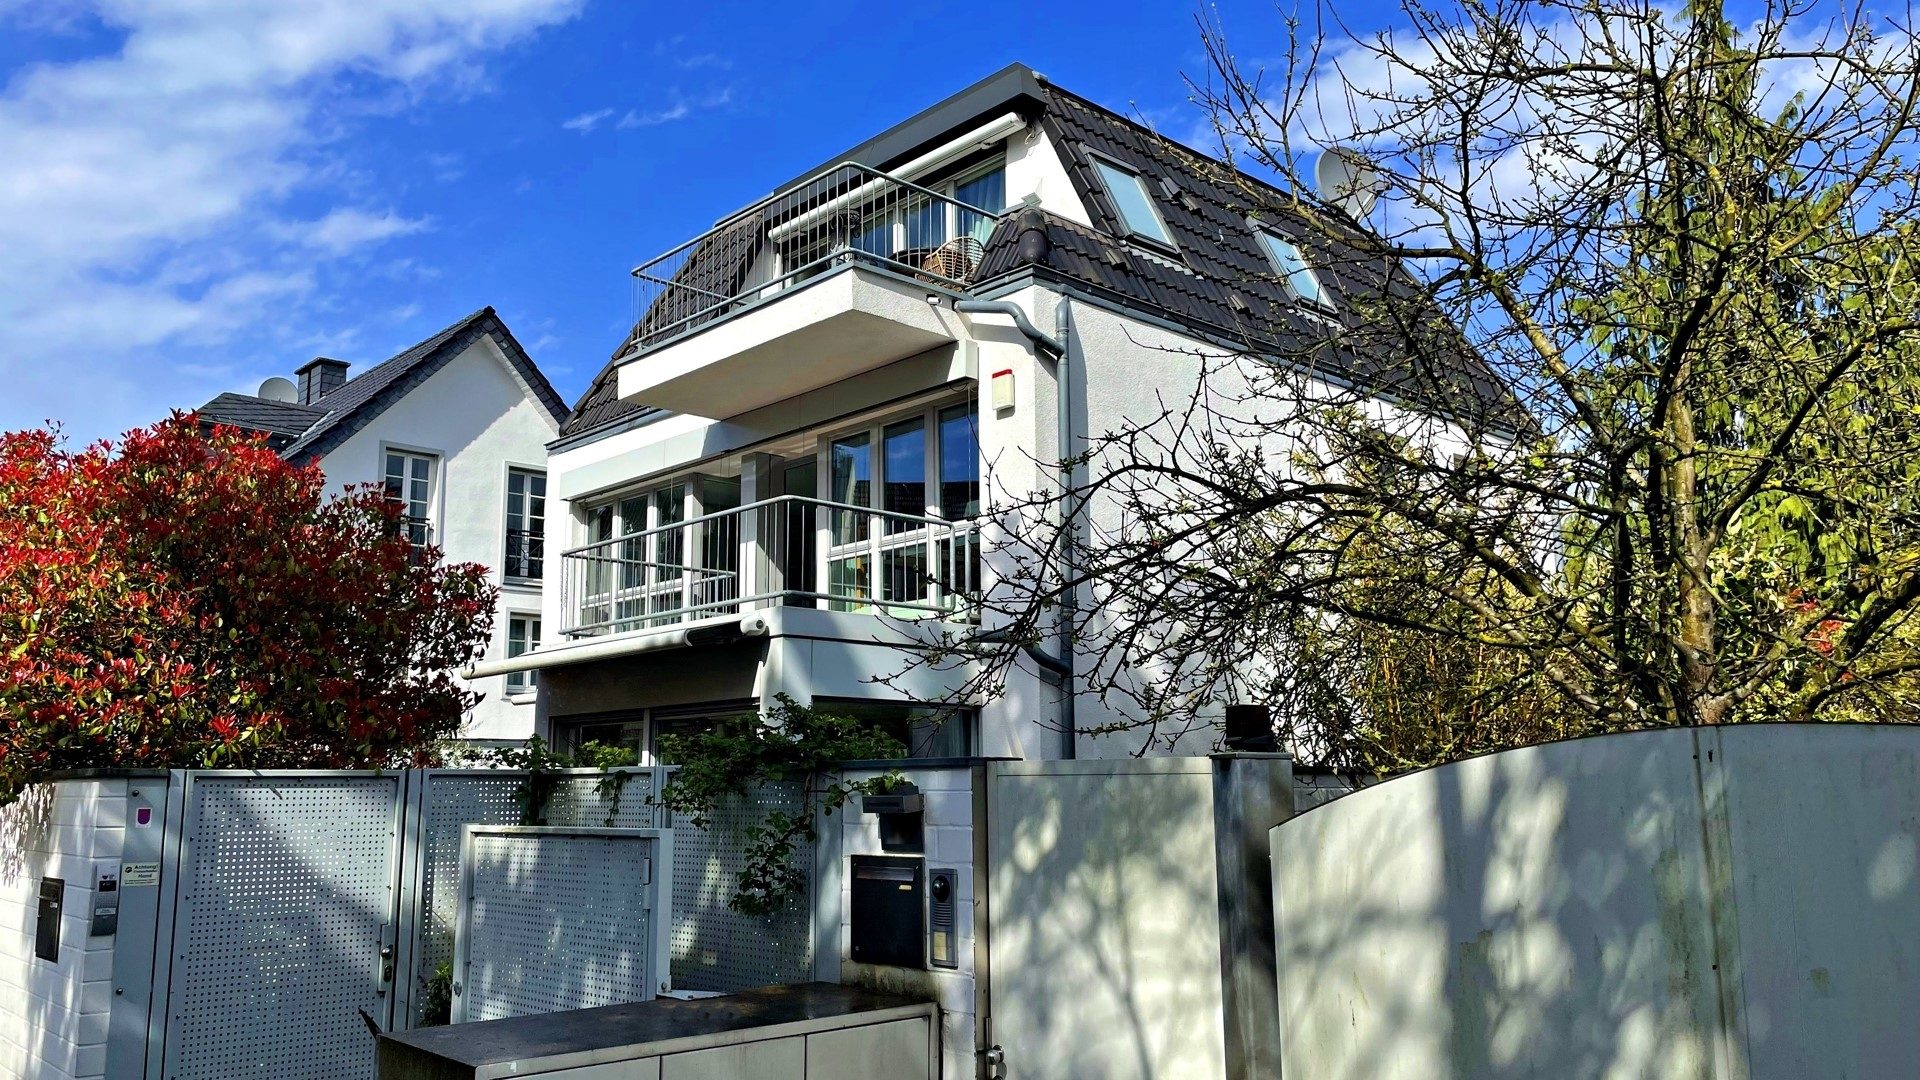 Böcker Wohnimmobilien - Immobilienangebot - Düsseldorf - Alle - Mediterranes Flair - Exklusives Stadthaus im schönen Stadtteil Kaiserswerth